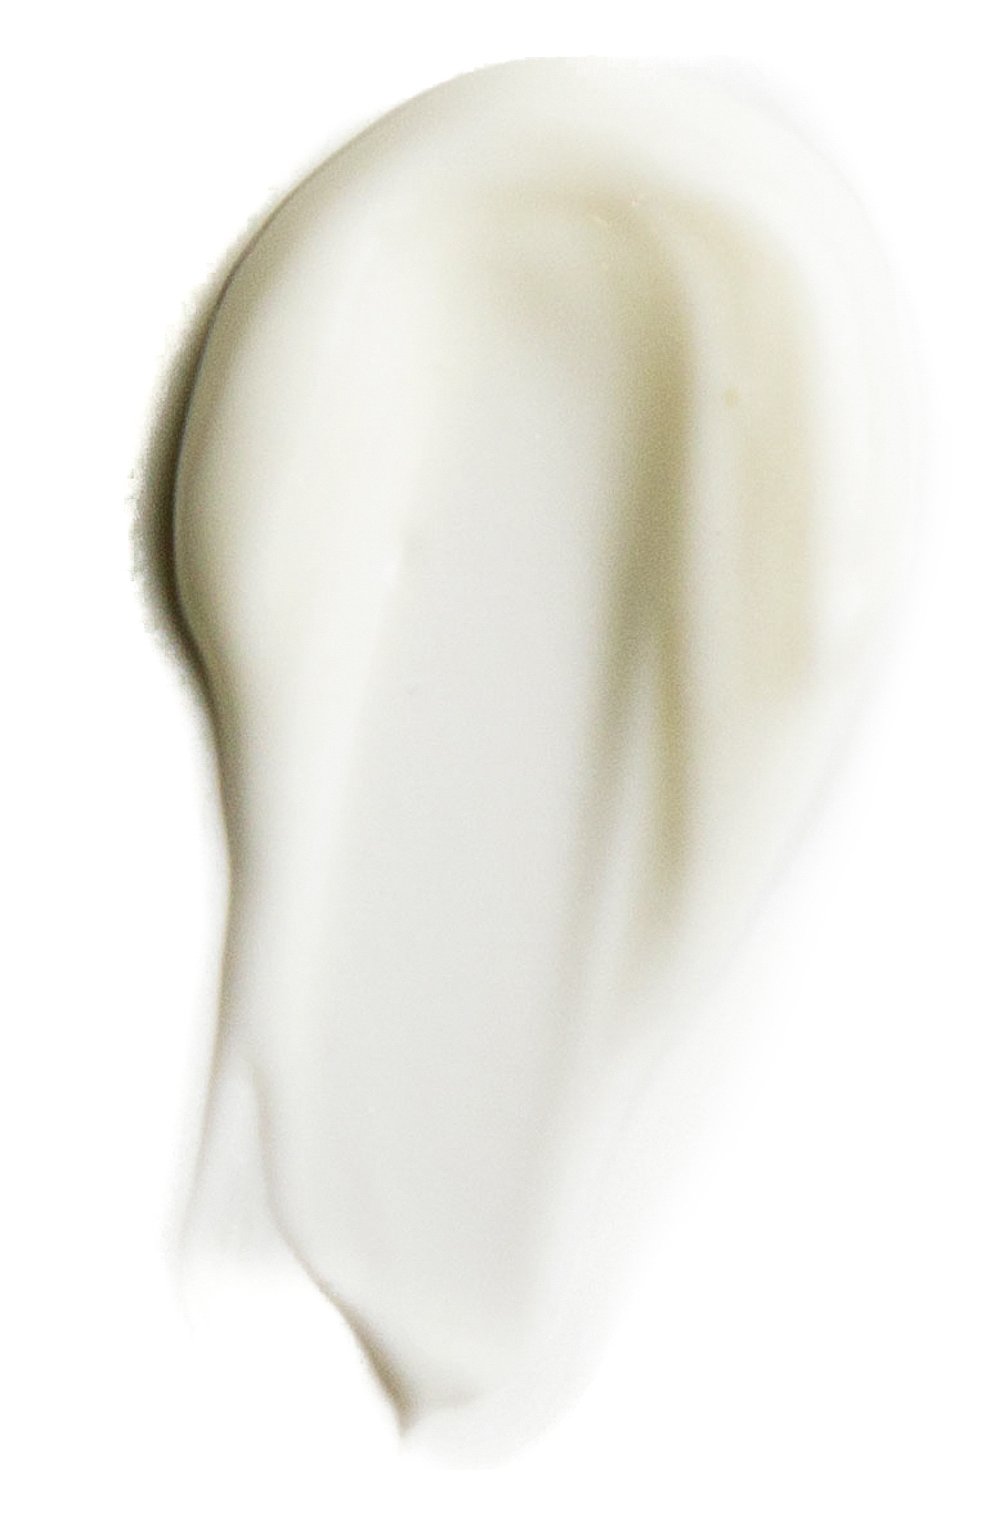 Идеальный увлажняющий крем для лица perfect moisturizer (120ml) 3LAB бесцветного цвета, арт. 0686769001078 | Фото 2 (Тип продукта: Кремы; Назначение: Для лица)